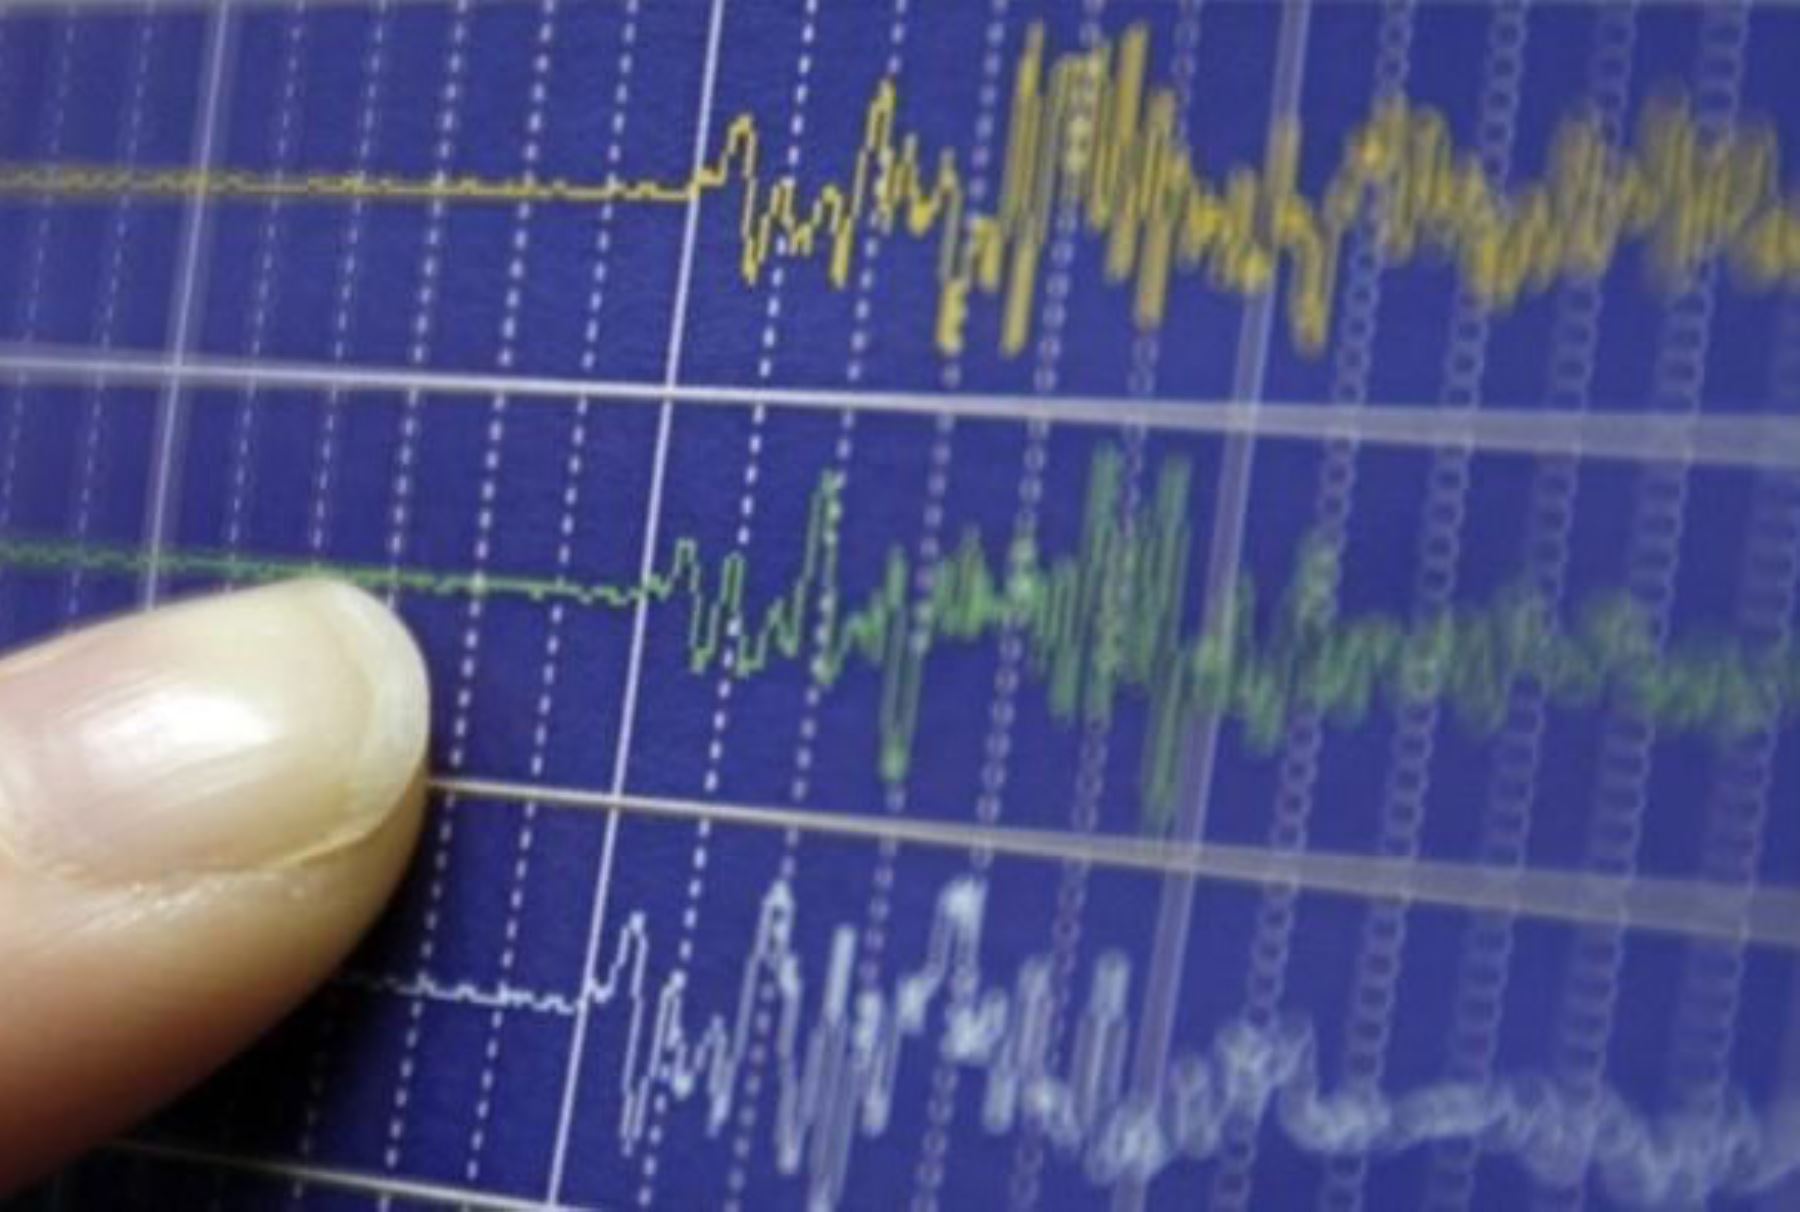 Un sismo de 4.4 grados de magnitud, con epicentro ubicado a 39 Kilómetros al suroeste de Palpa, en la región Ica, a una profundidad de 45 kilómetros, se registró hoy a las 16:32 horas, según información proporcionada por el Instituto Geofísico del Perú (IGP). ANDINA/Difusión